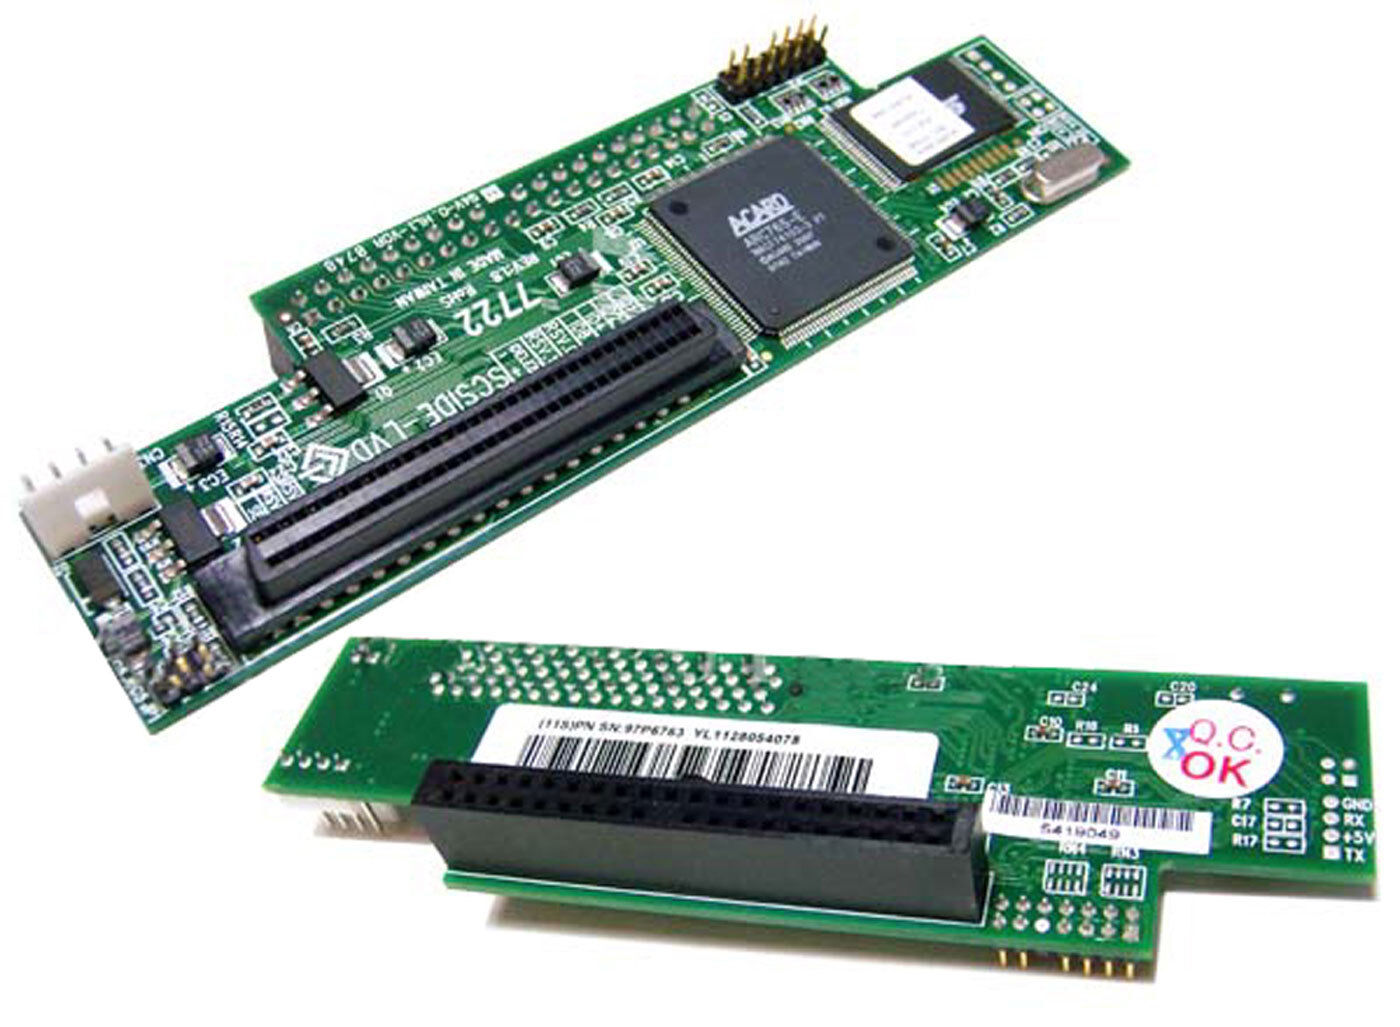 IBM aCard IDE to LVD-SCSi Bridge Adapter AEC-7722IR Rev:1.8 RoHs BIOS Ver: 3.77I